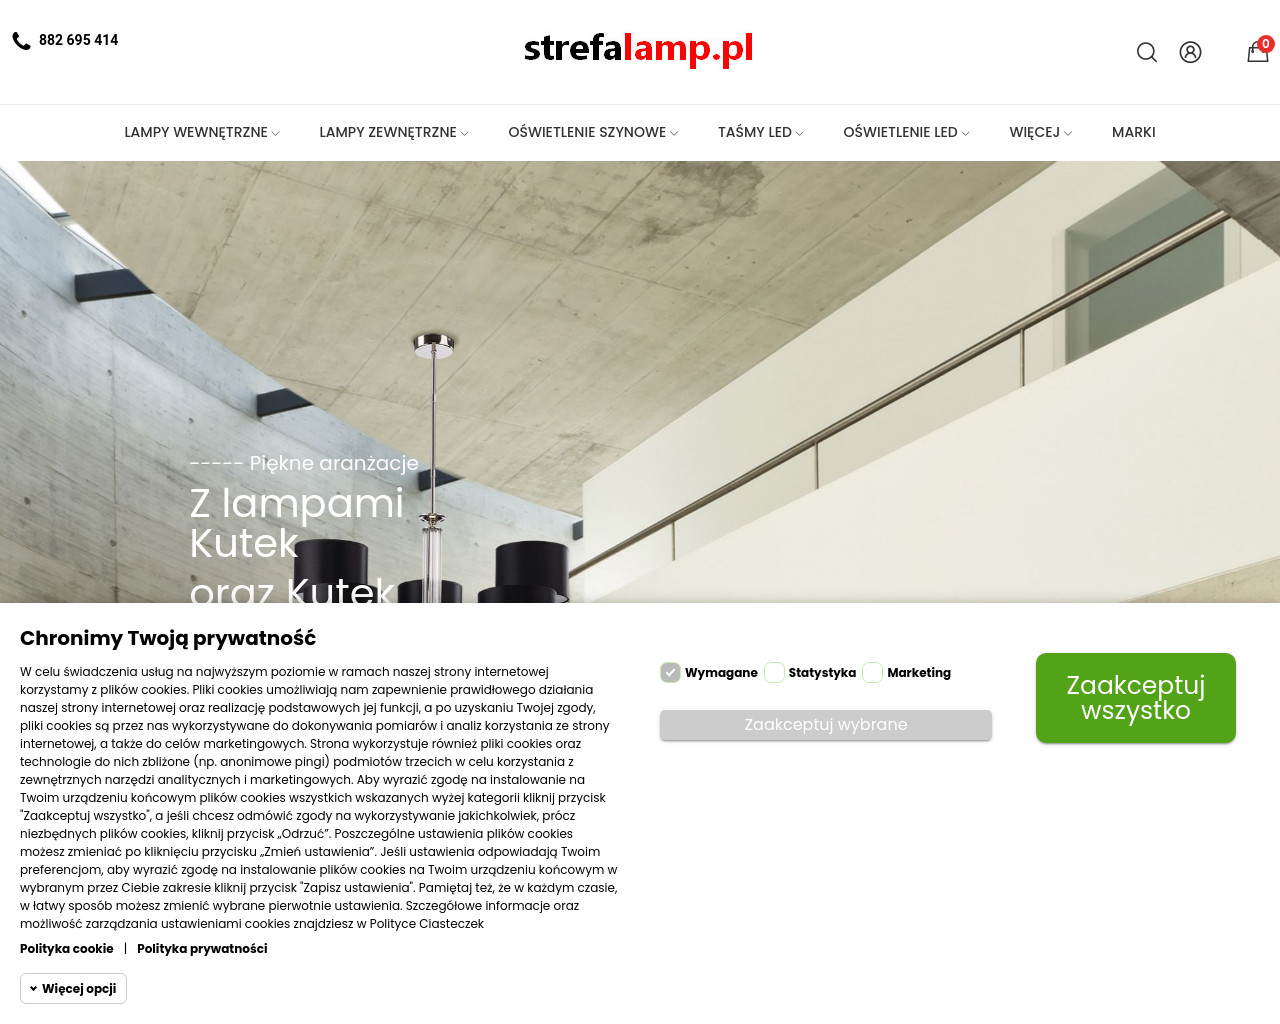 strefalamp.pl